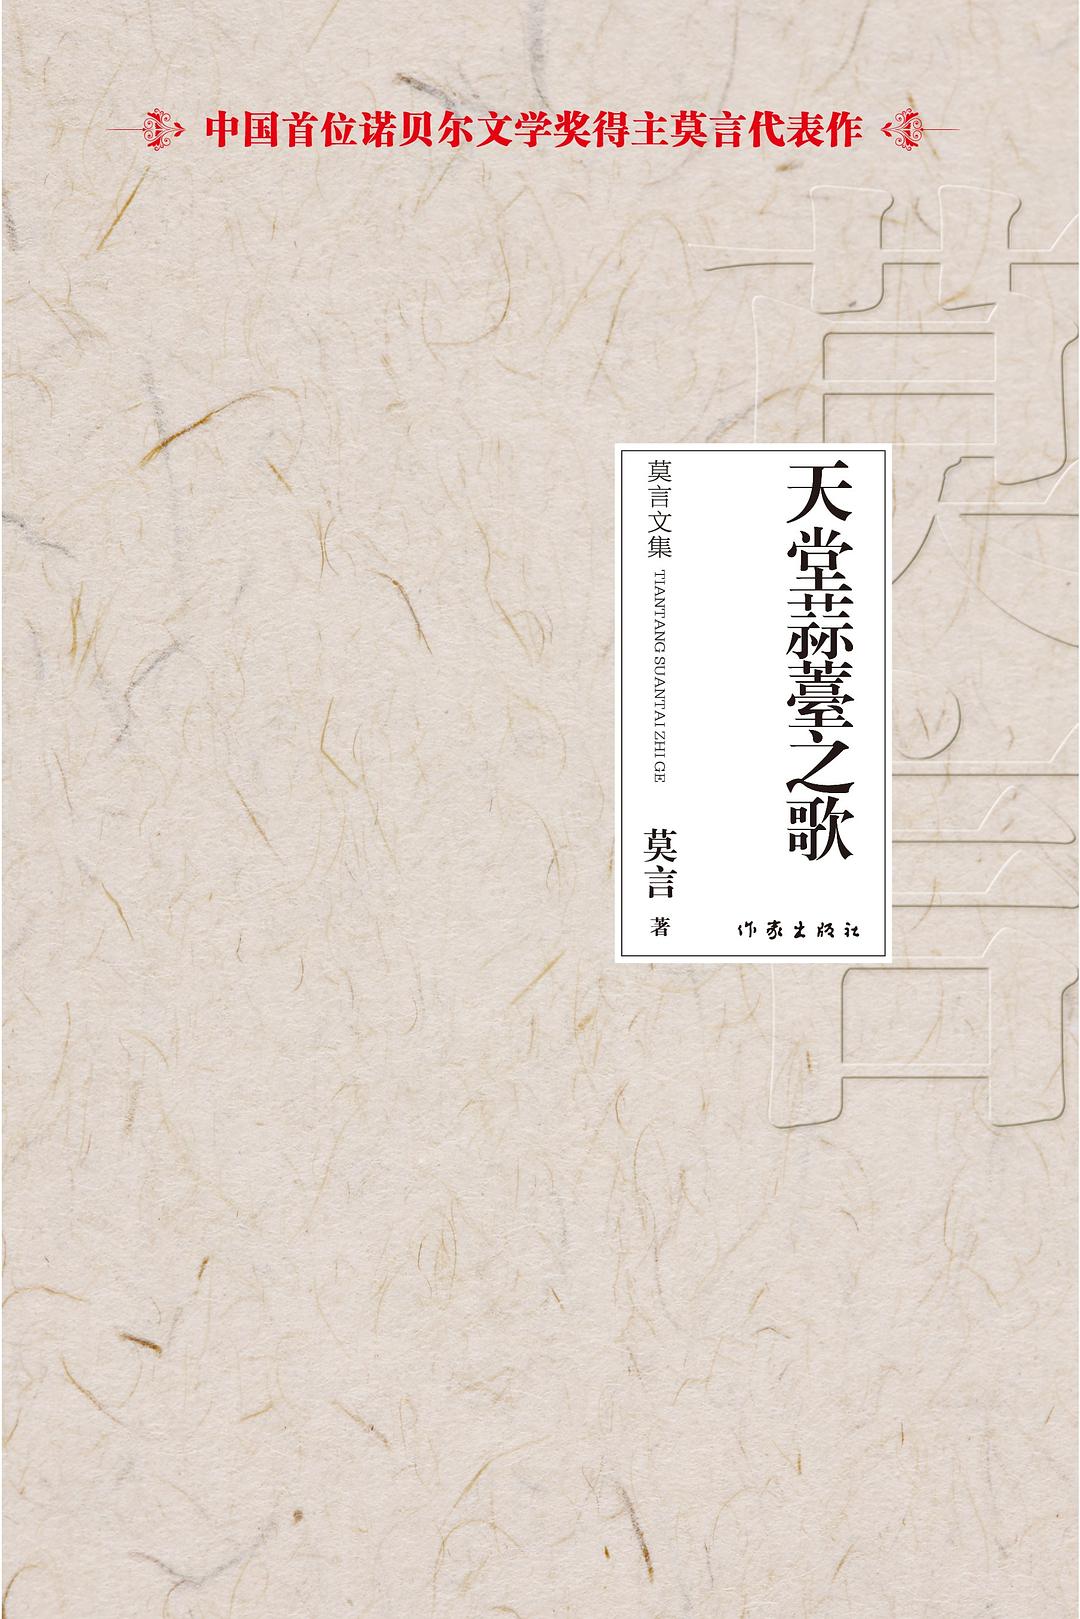 天堂蒜薹之歌-莫言文集-中国首位诺贝尔文学奖得主莫言代表作